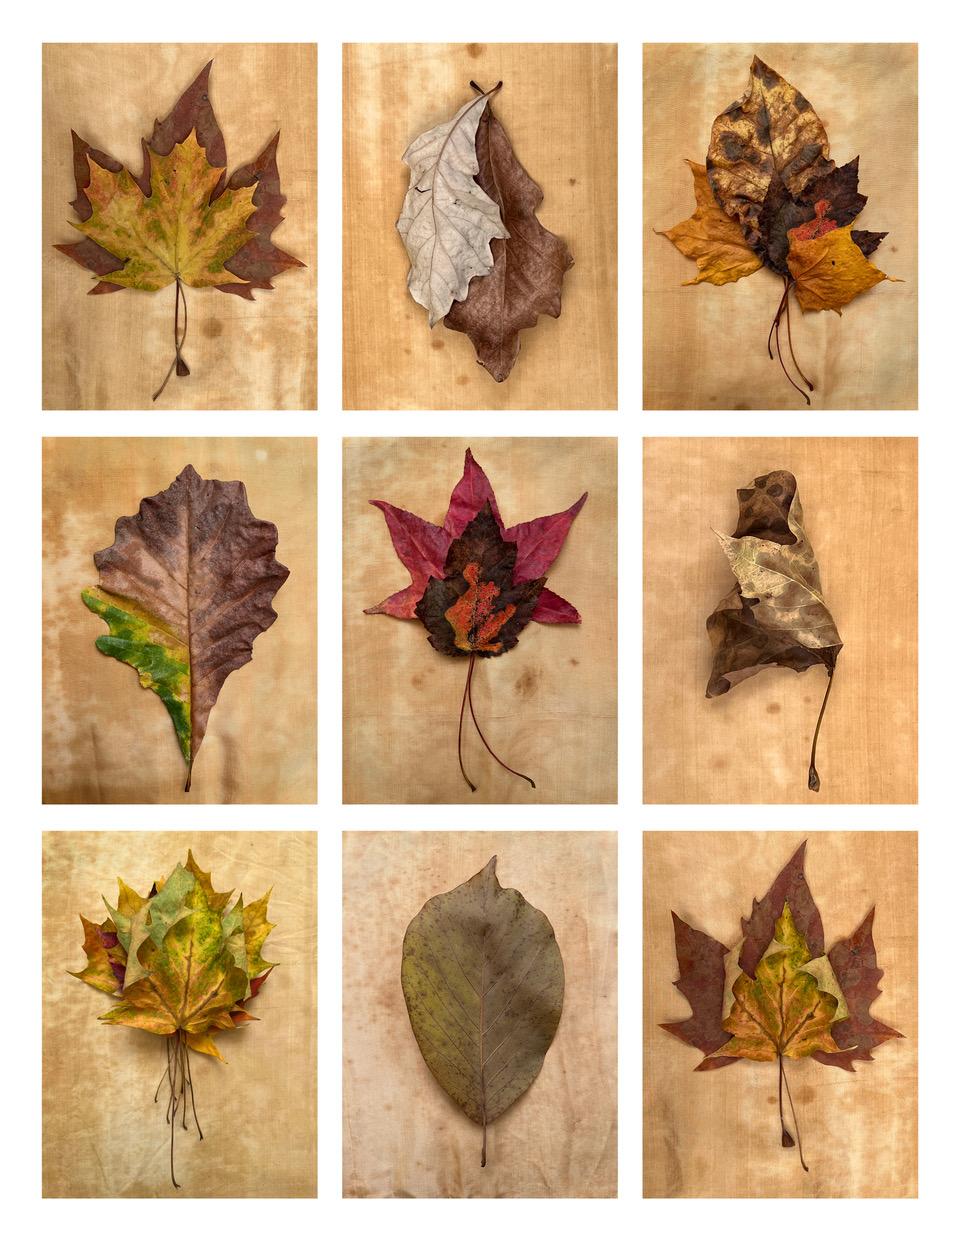 Paul Cava Still-Life Photograph – Nine Leaves: Gitter mit Blattfotografien von Natur-Stillleben in Gold, Rot und Grün